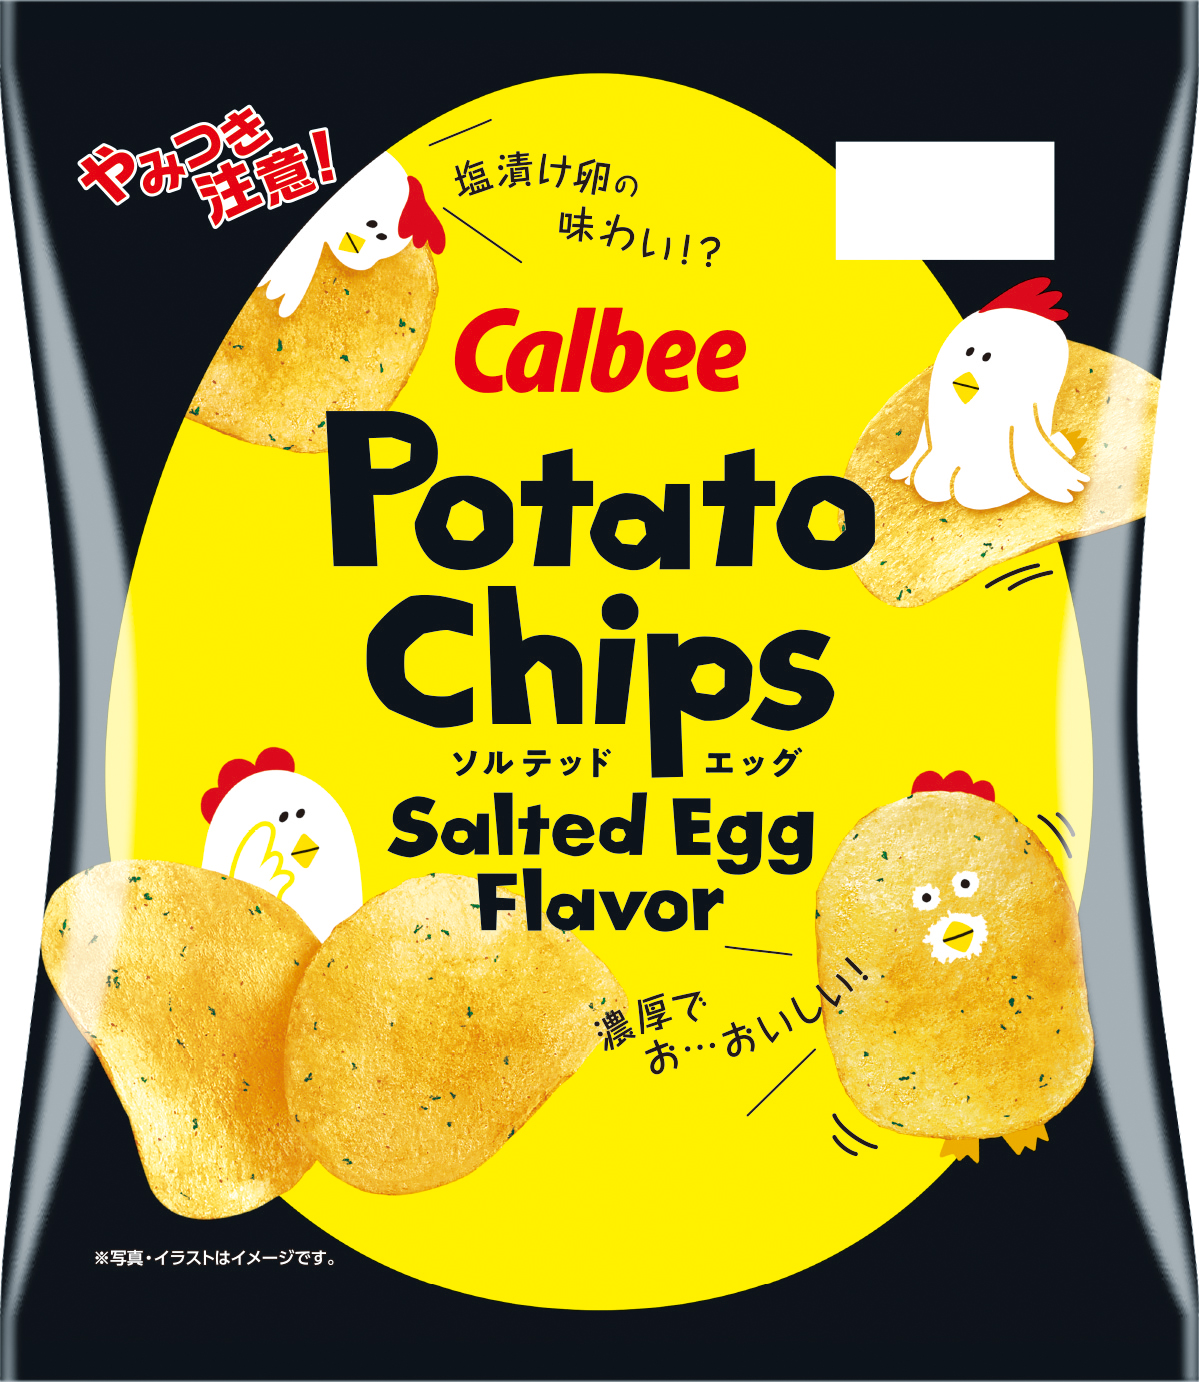 やみつき注意 海外で爆発的にヒットした人気フレーバーが登場 塩漬け卵の味わいを再現したポテトチップス Potato Chips Salted Egg Flavor カルビー株式会社のプレスリリース